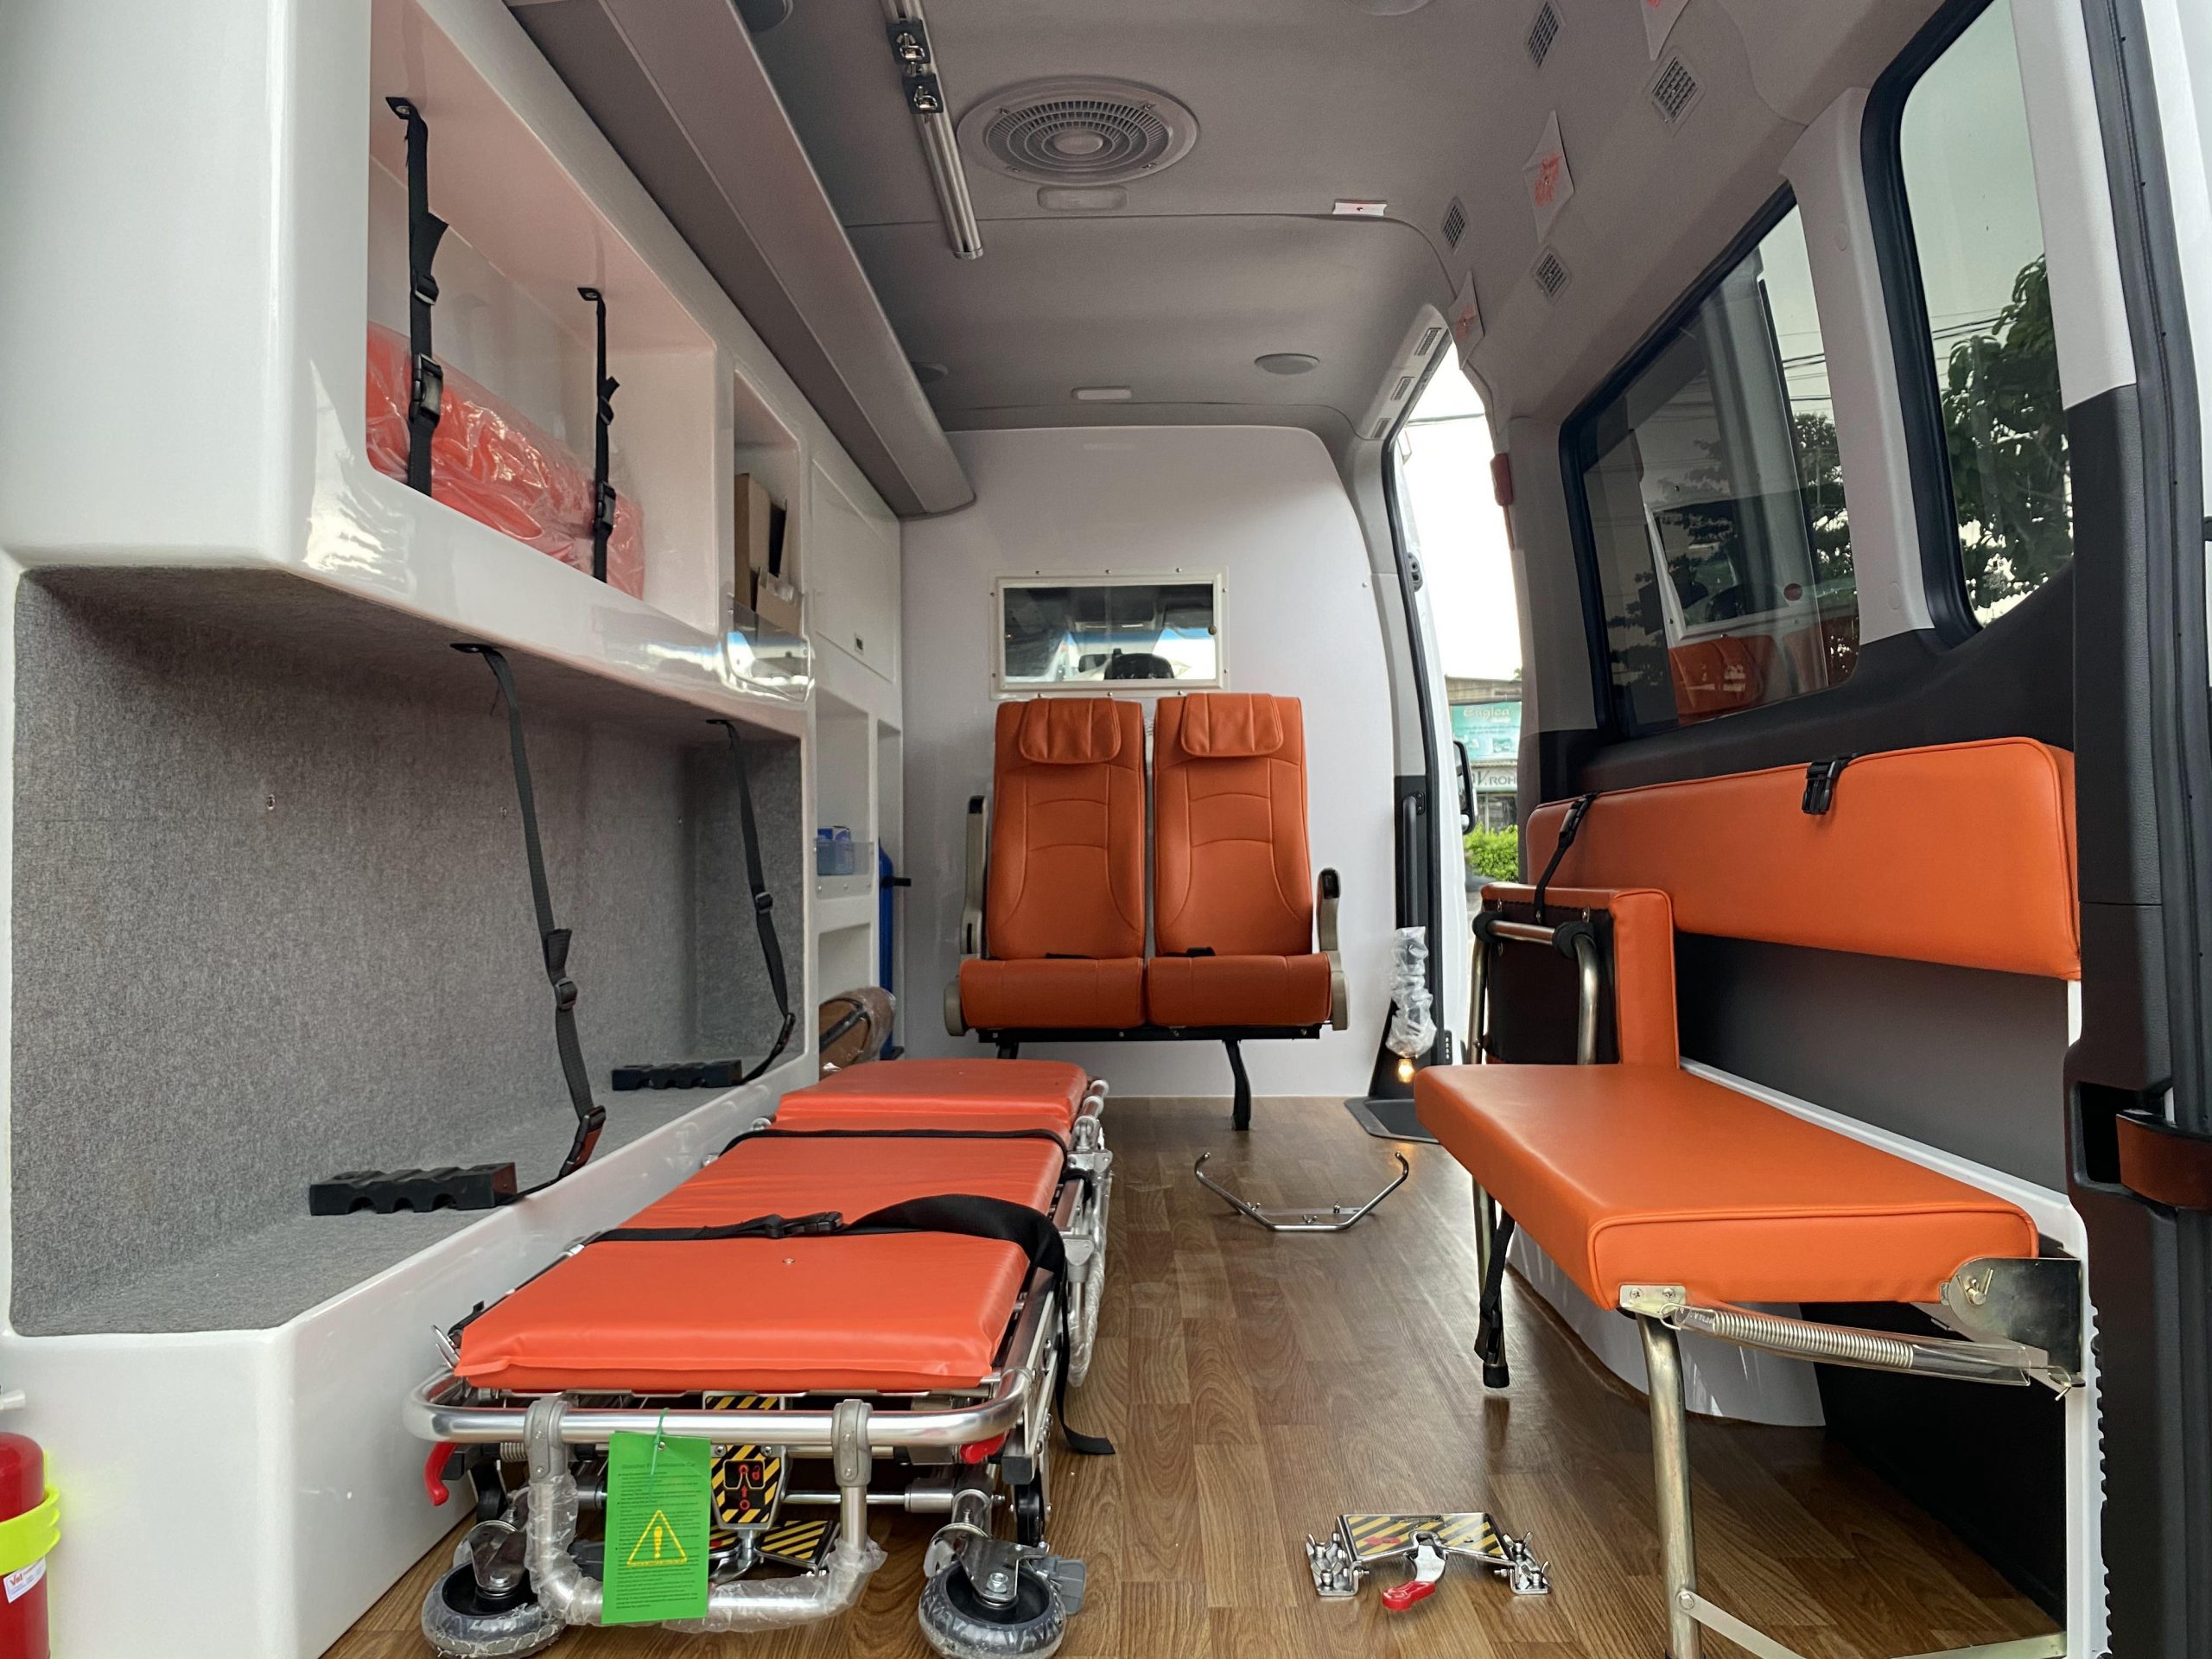 Trang thiết bị y tế theo xe cấp cứu Solati